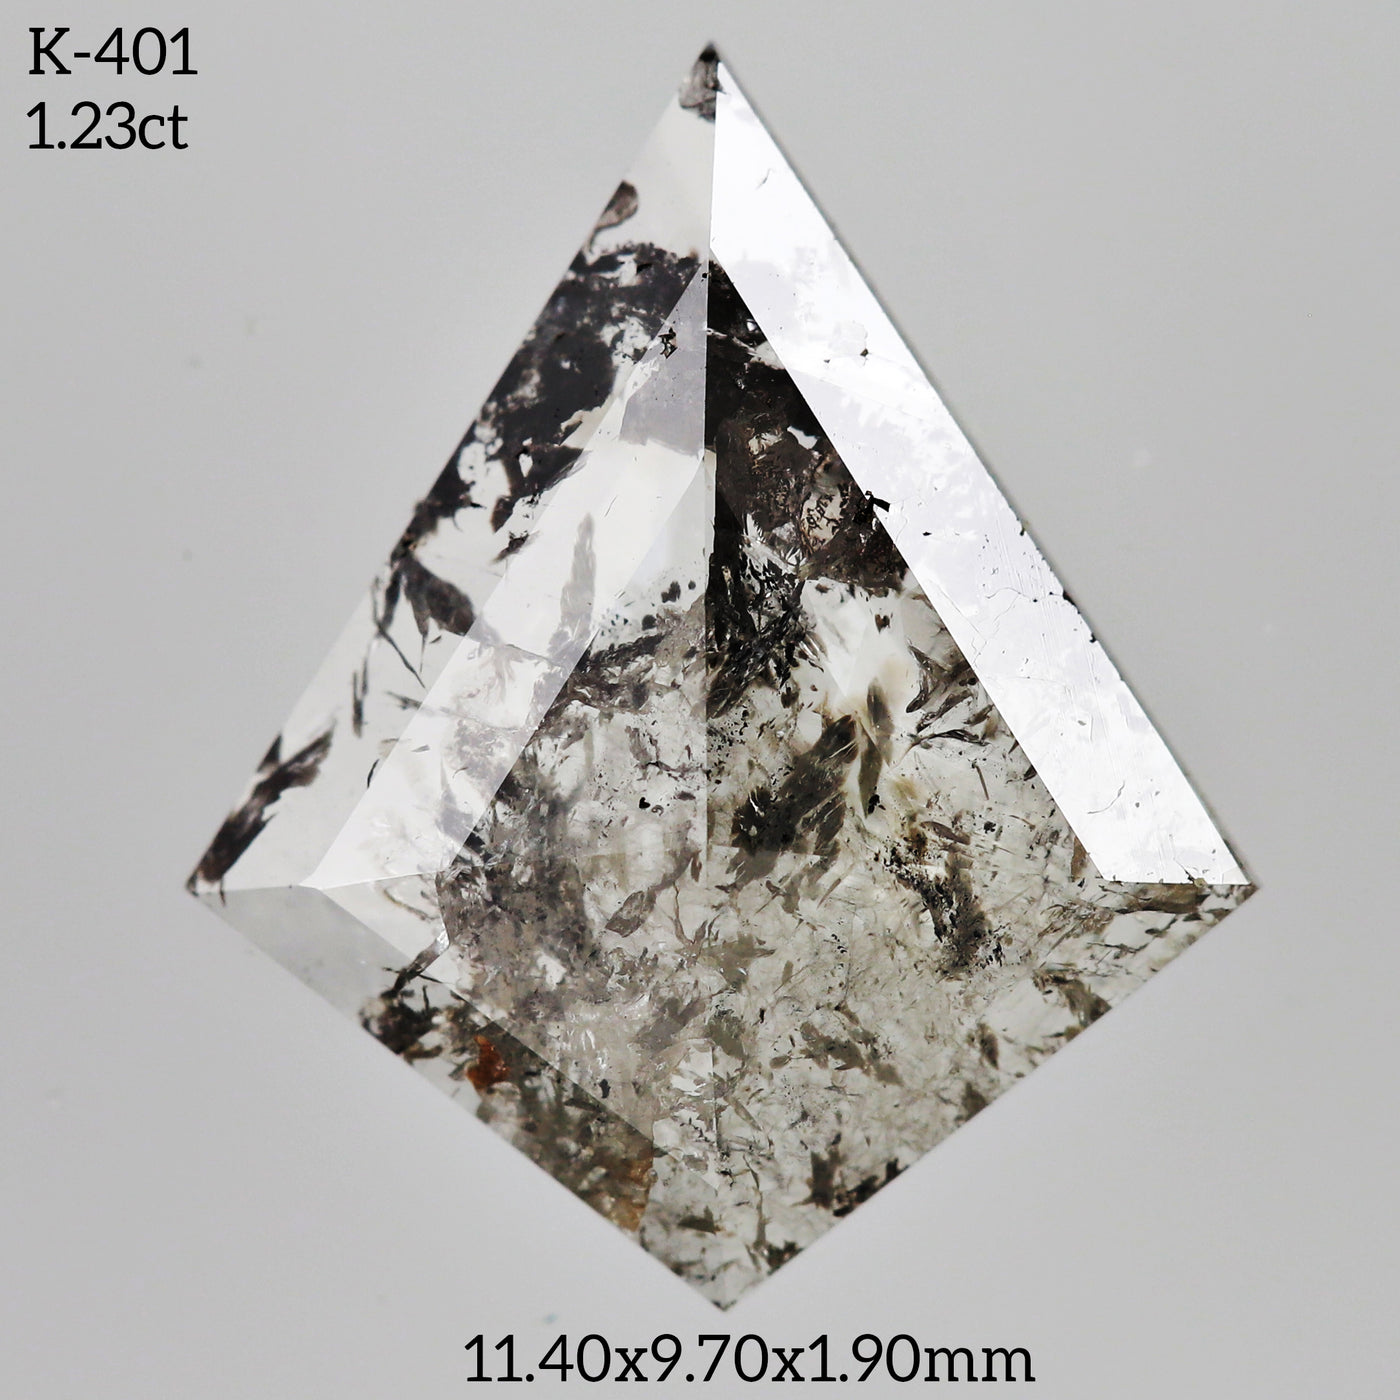 K401 - Salt and pepper kite diamond